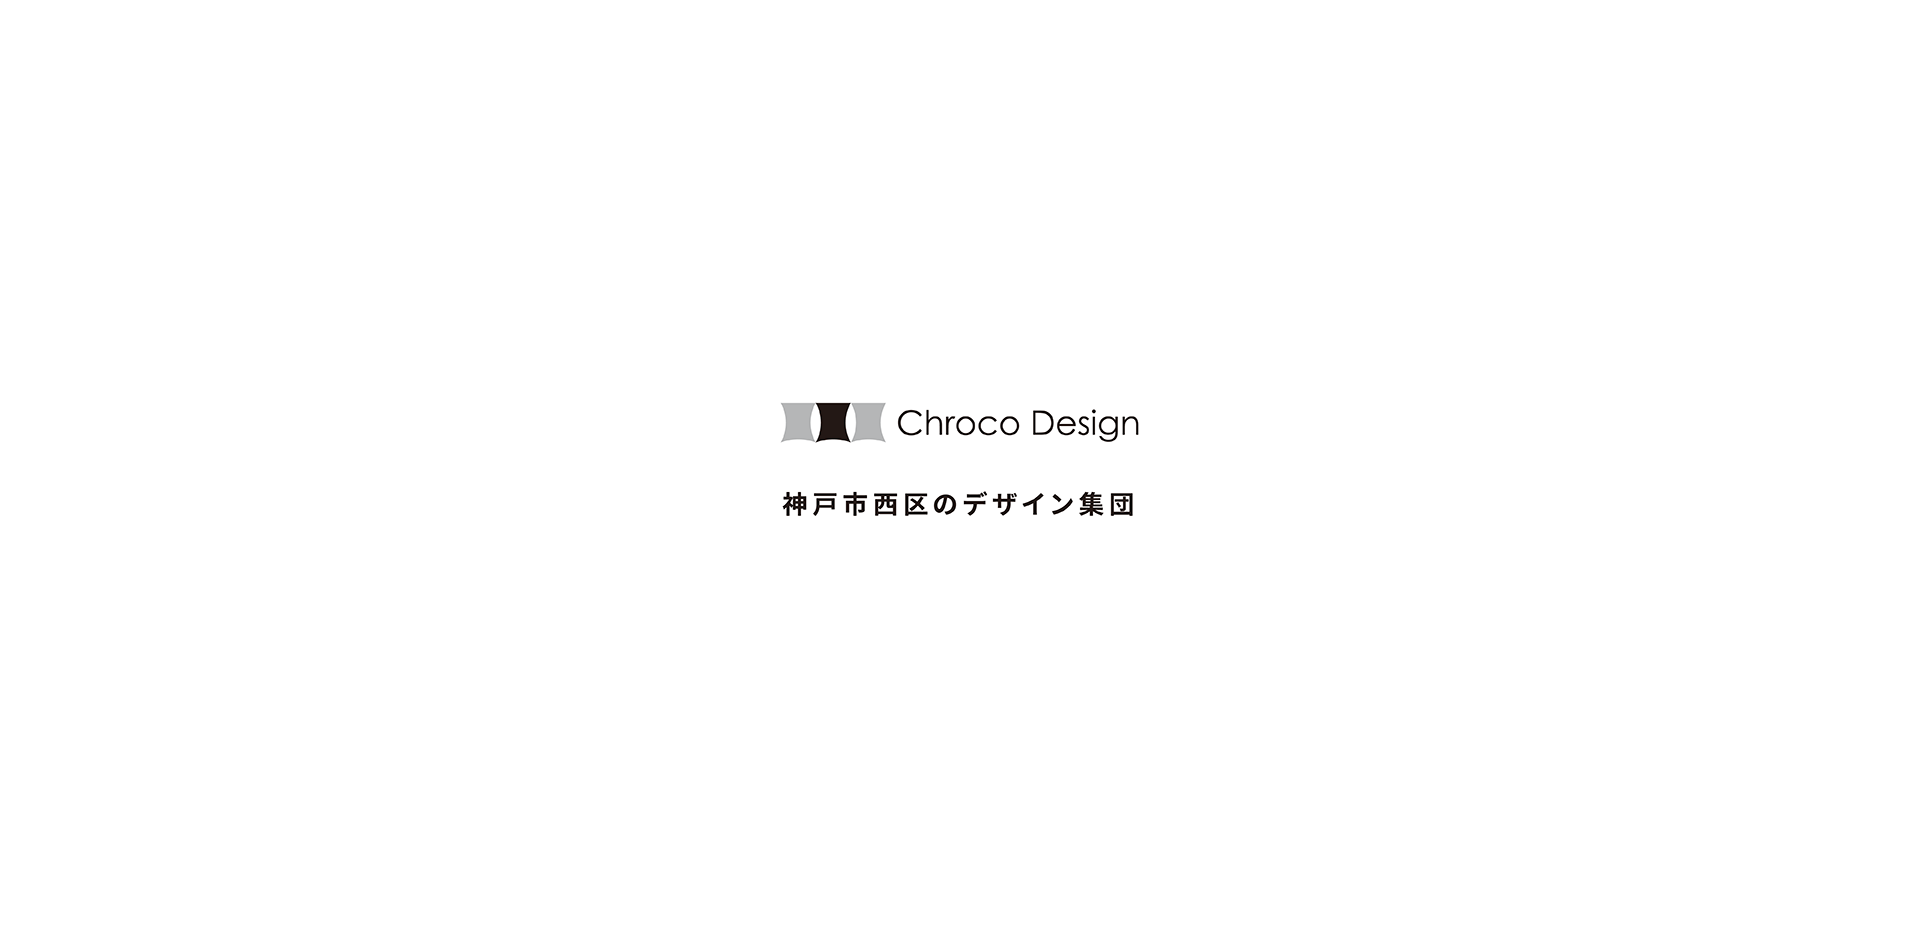 神戸市西区のデザイン集団